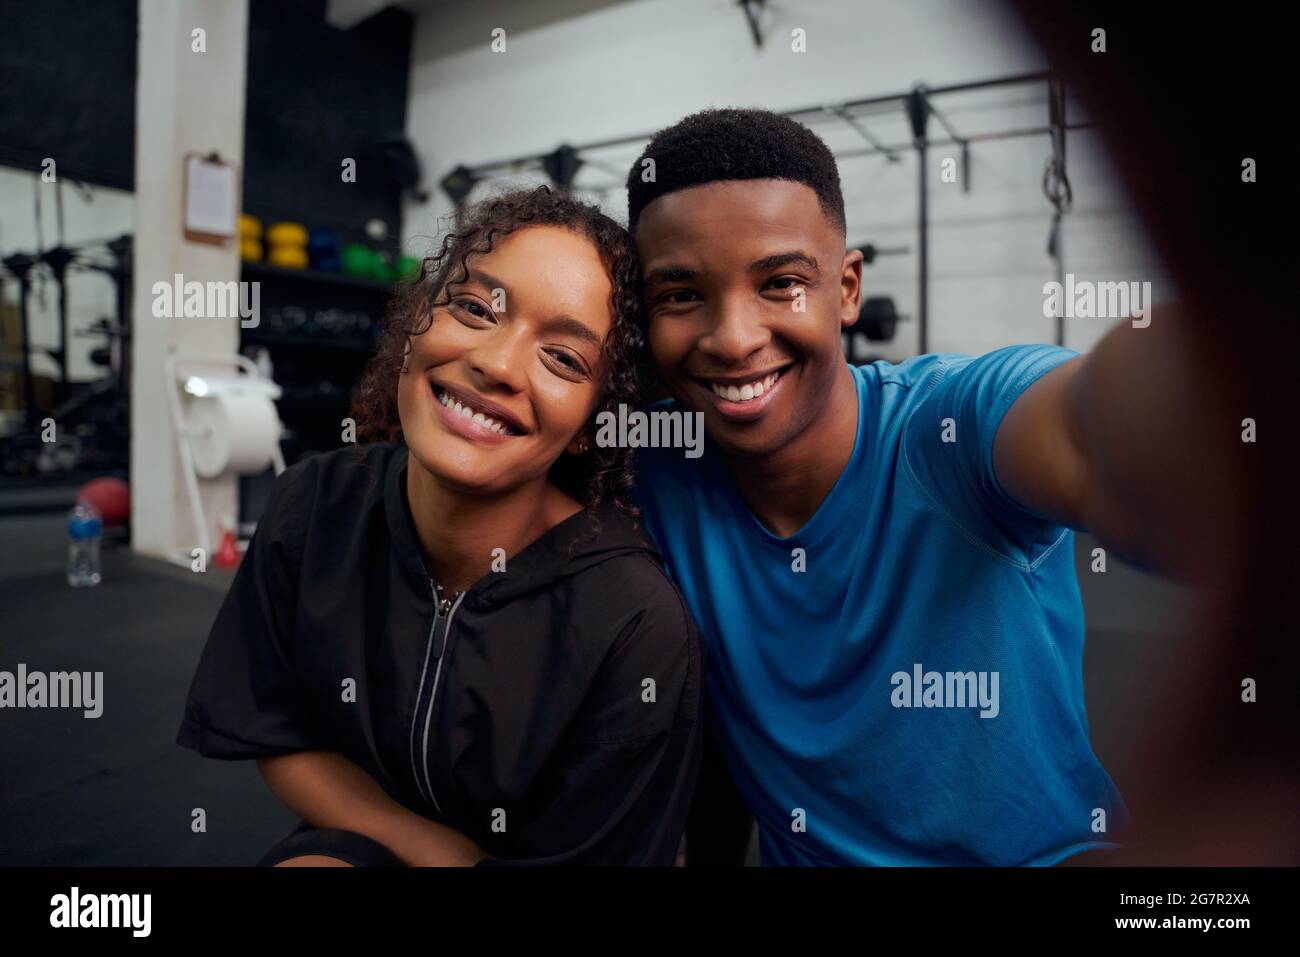 Amis de course mixtes prenant une photo ensemble dans la salle de gym. Heureux Afro-américain homme et femme prenant un selfie. Photo de haute qualité Banque D'Images